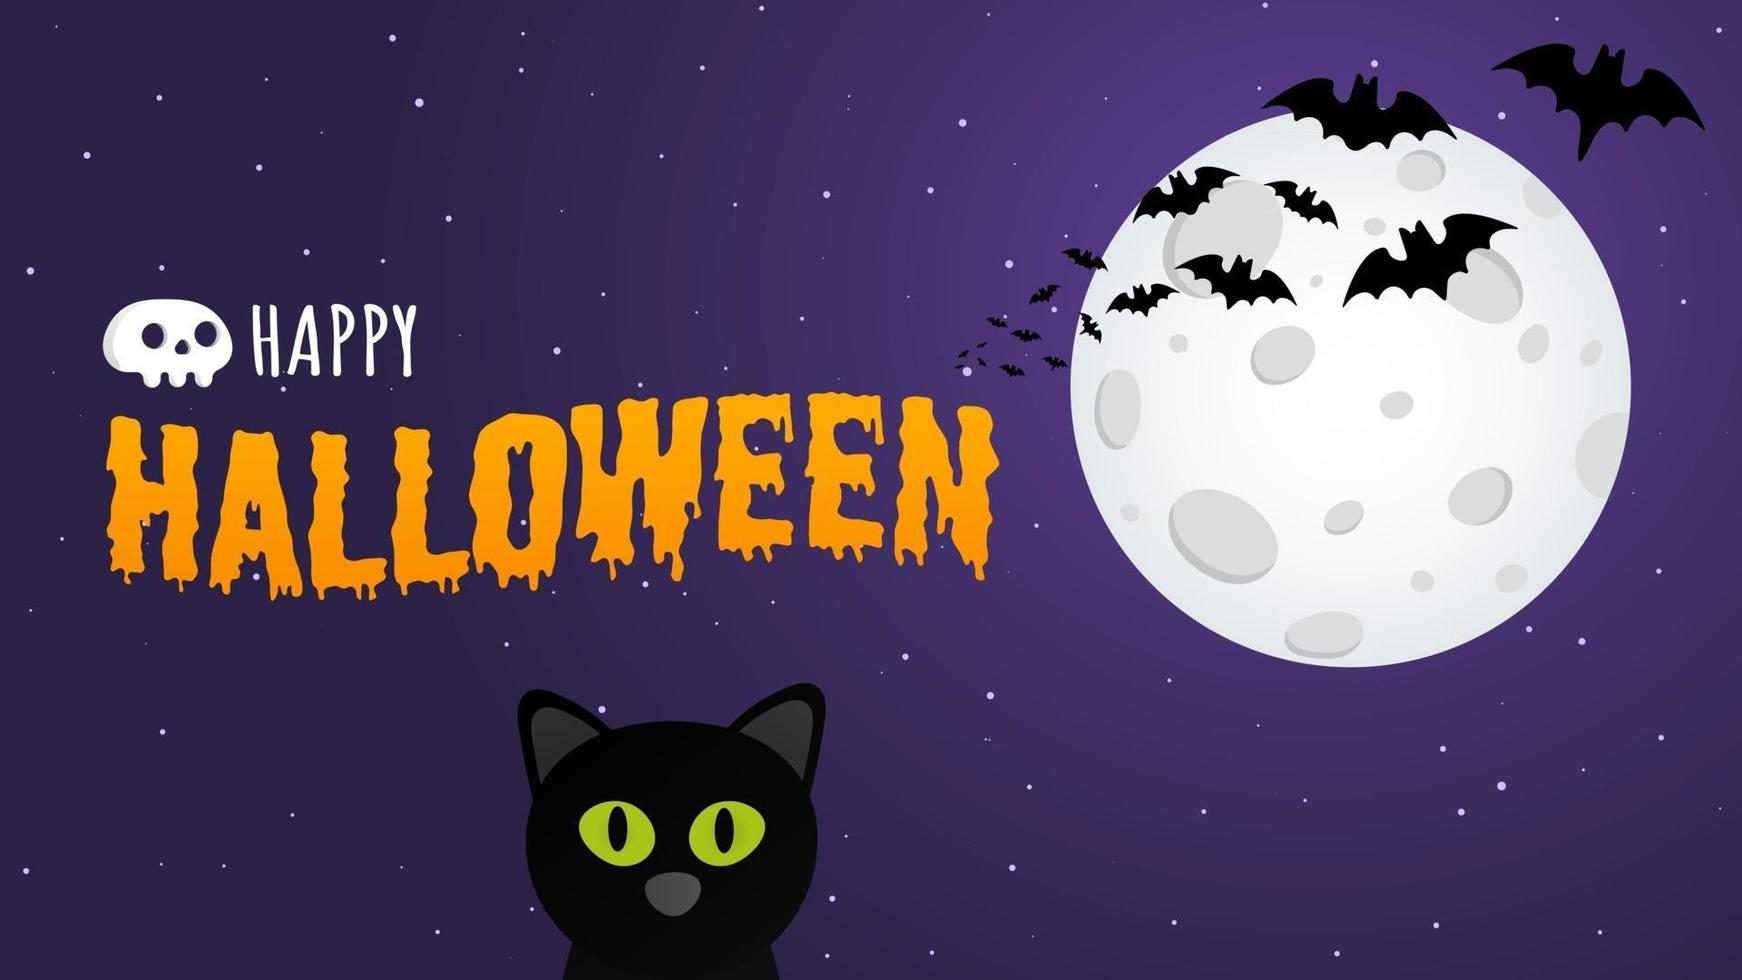 Banner de postal de texto de feliz halloween con gato bruja, murciélagos y texto vector